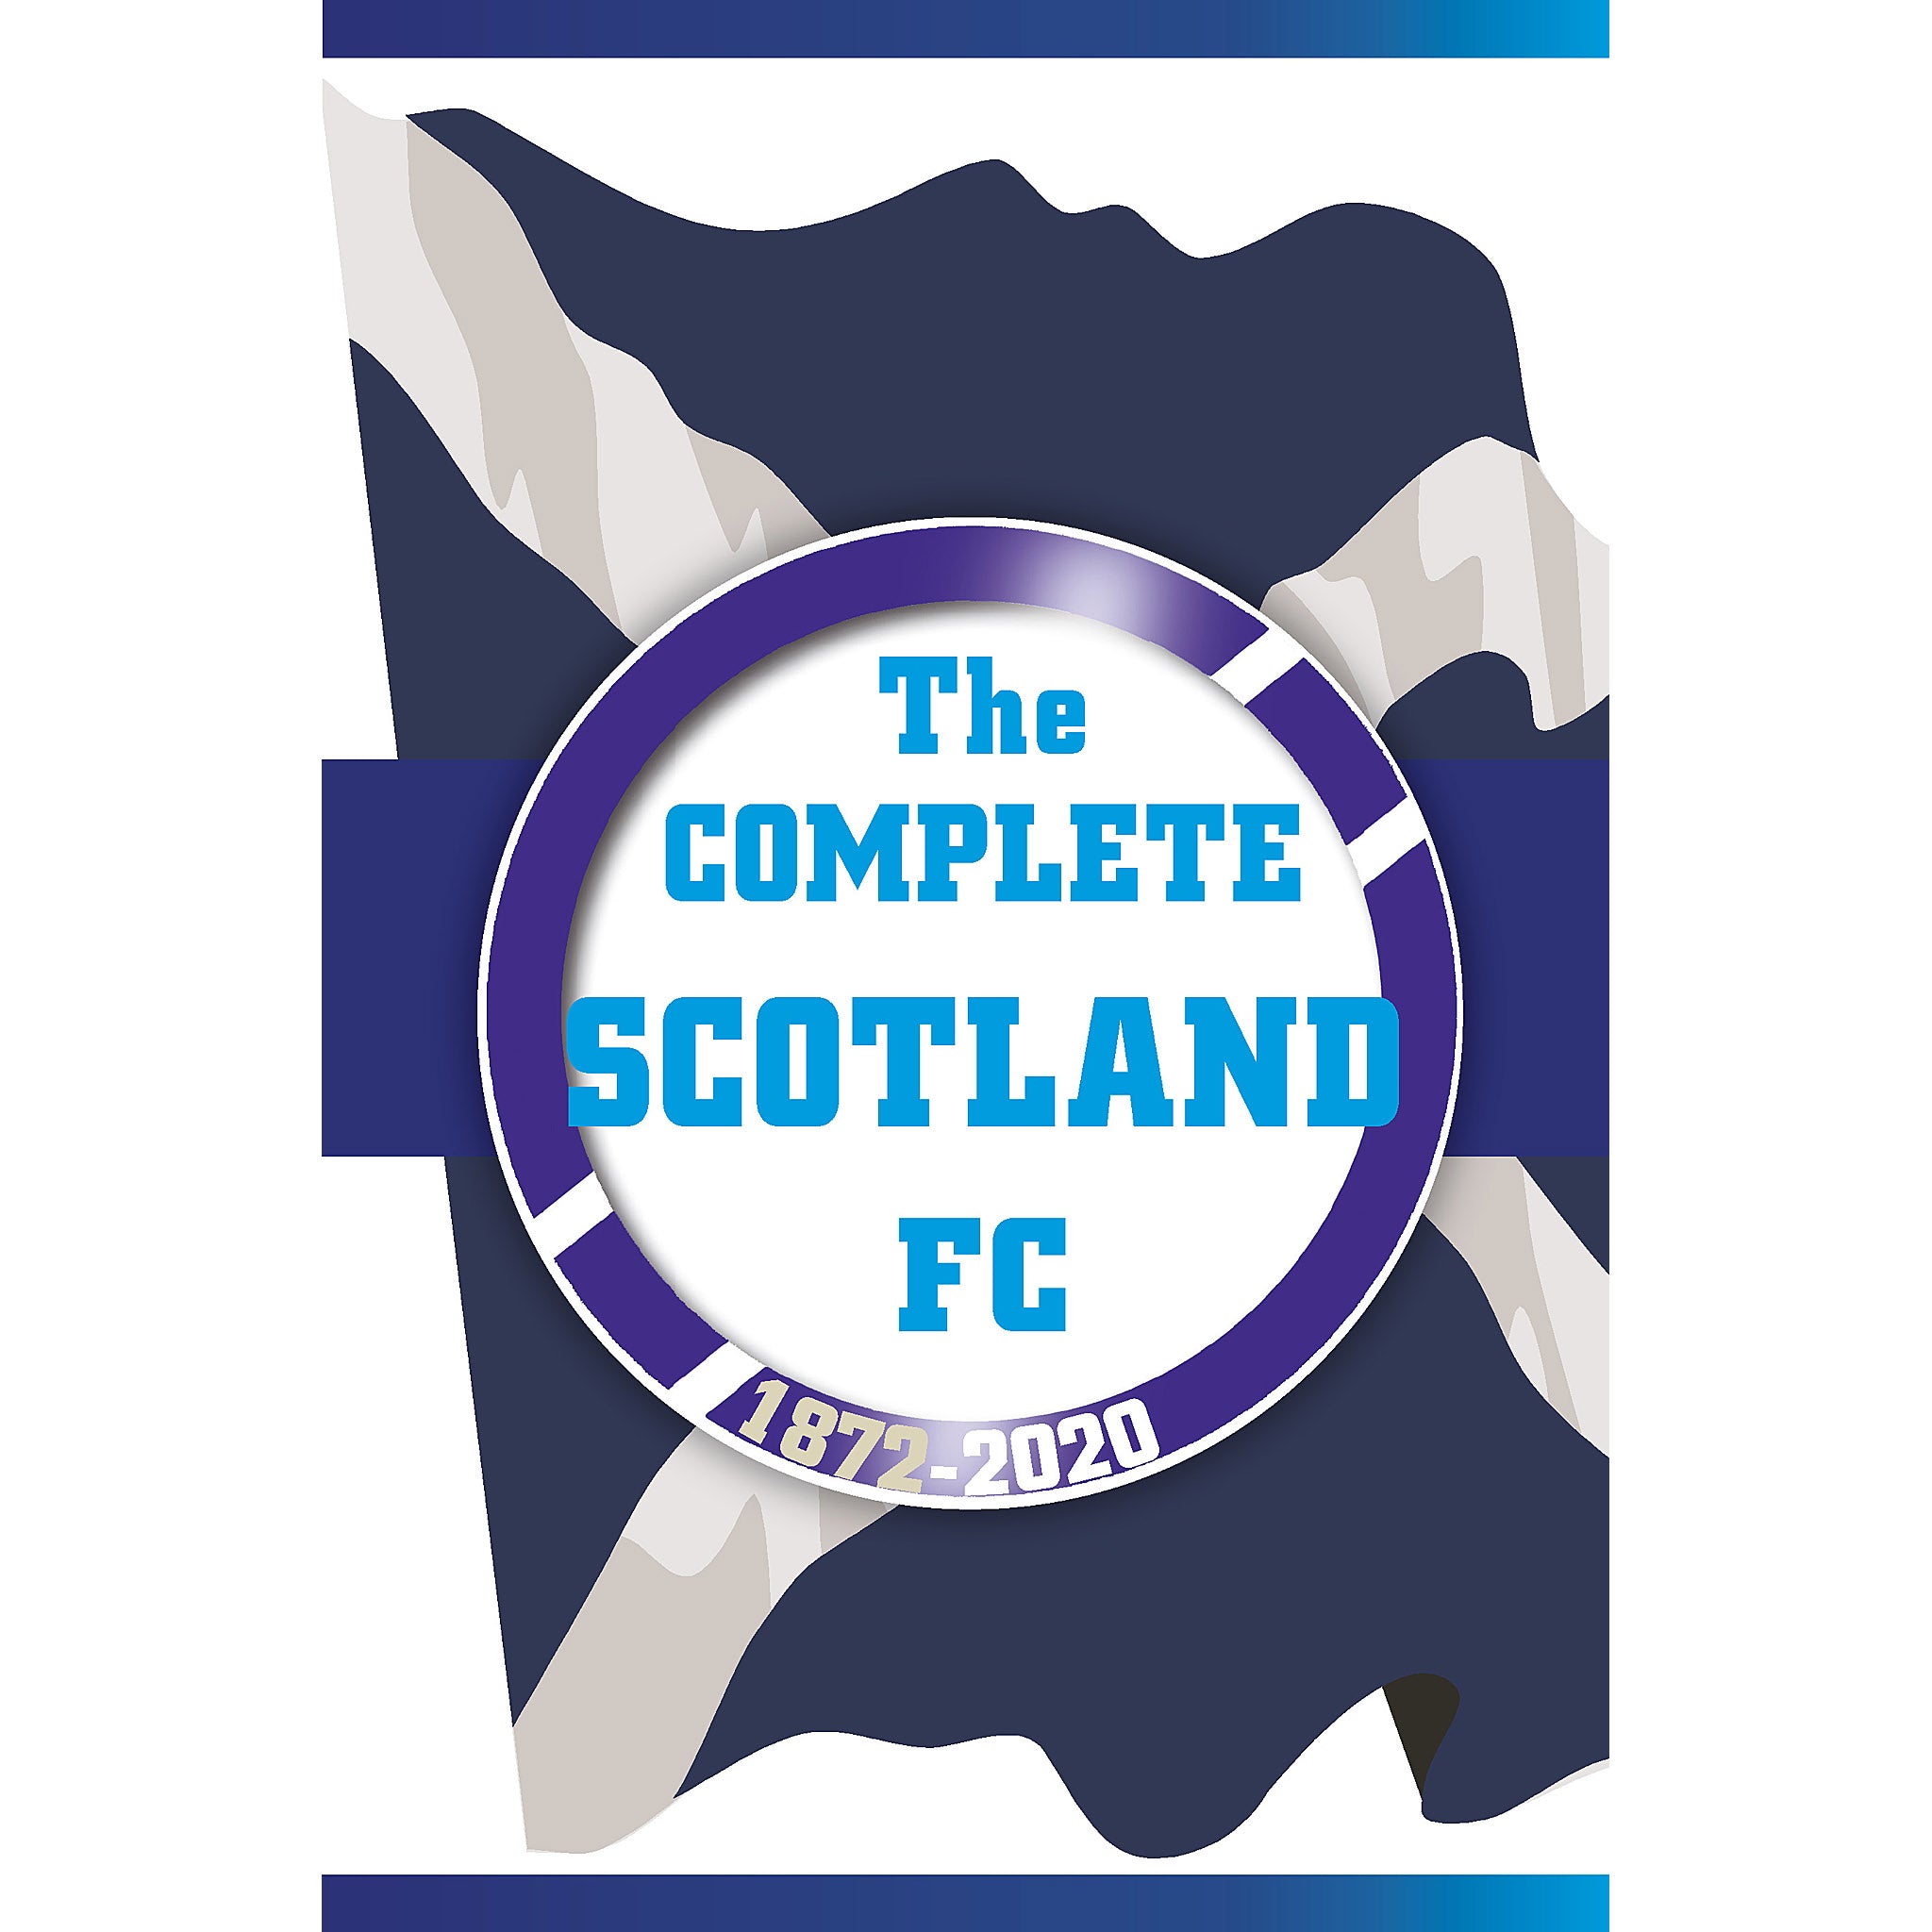 The Complete Scotland FC 1872-2020